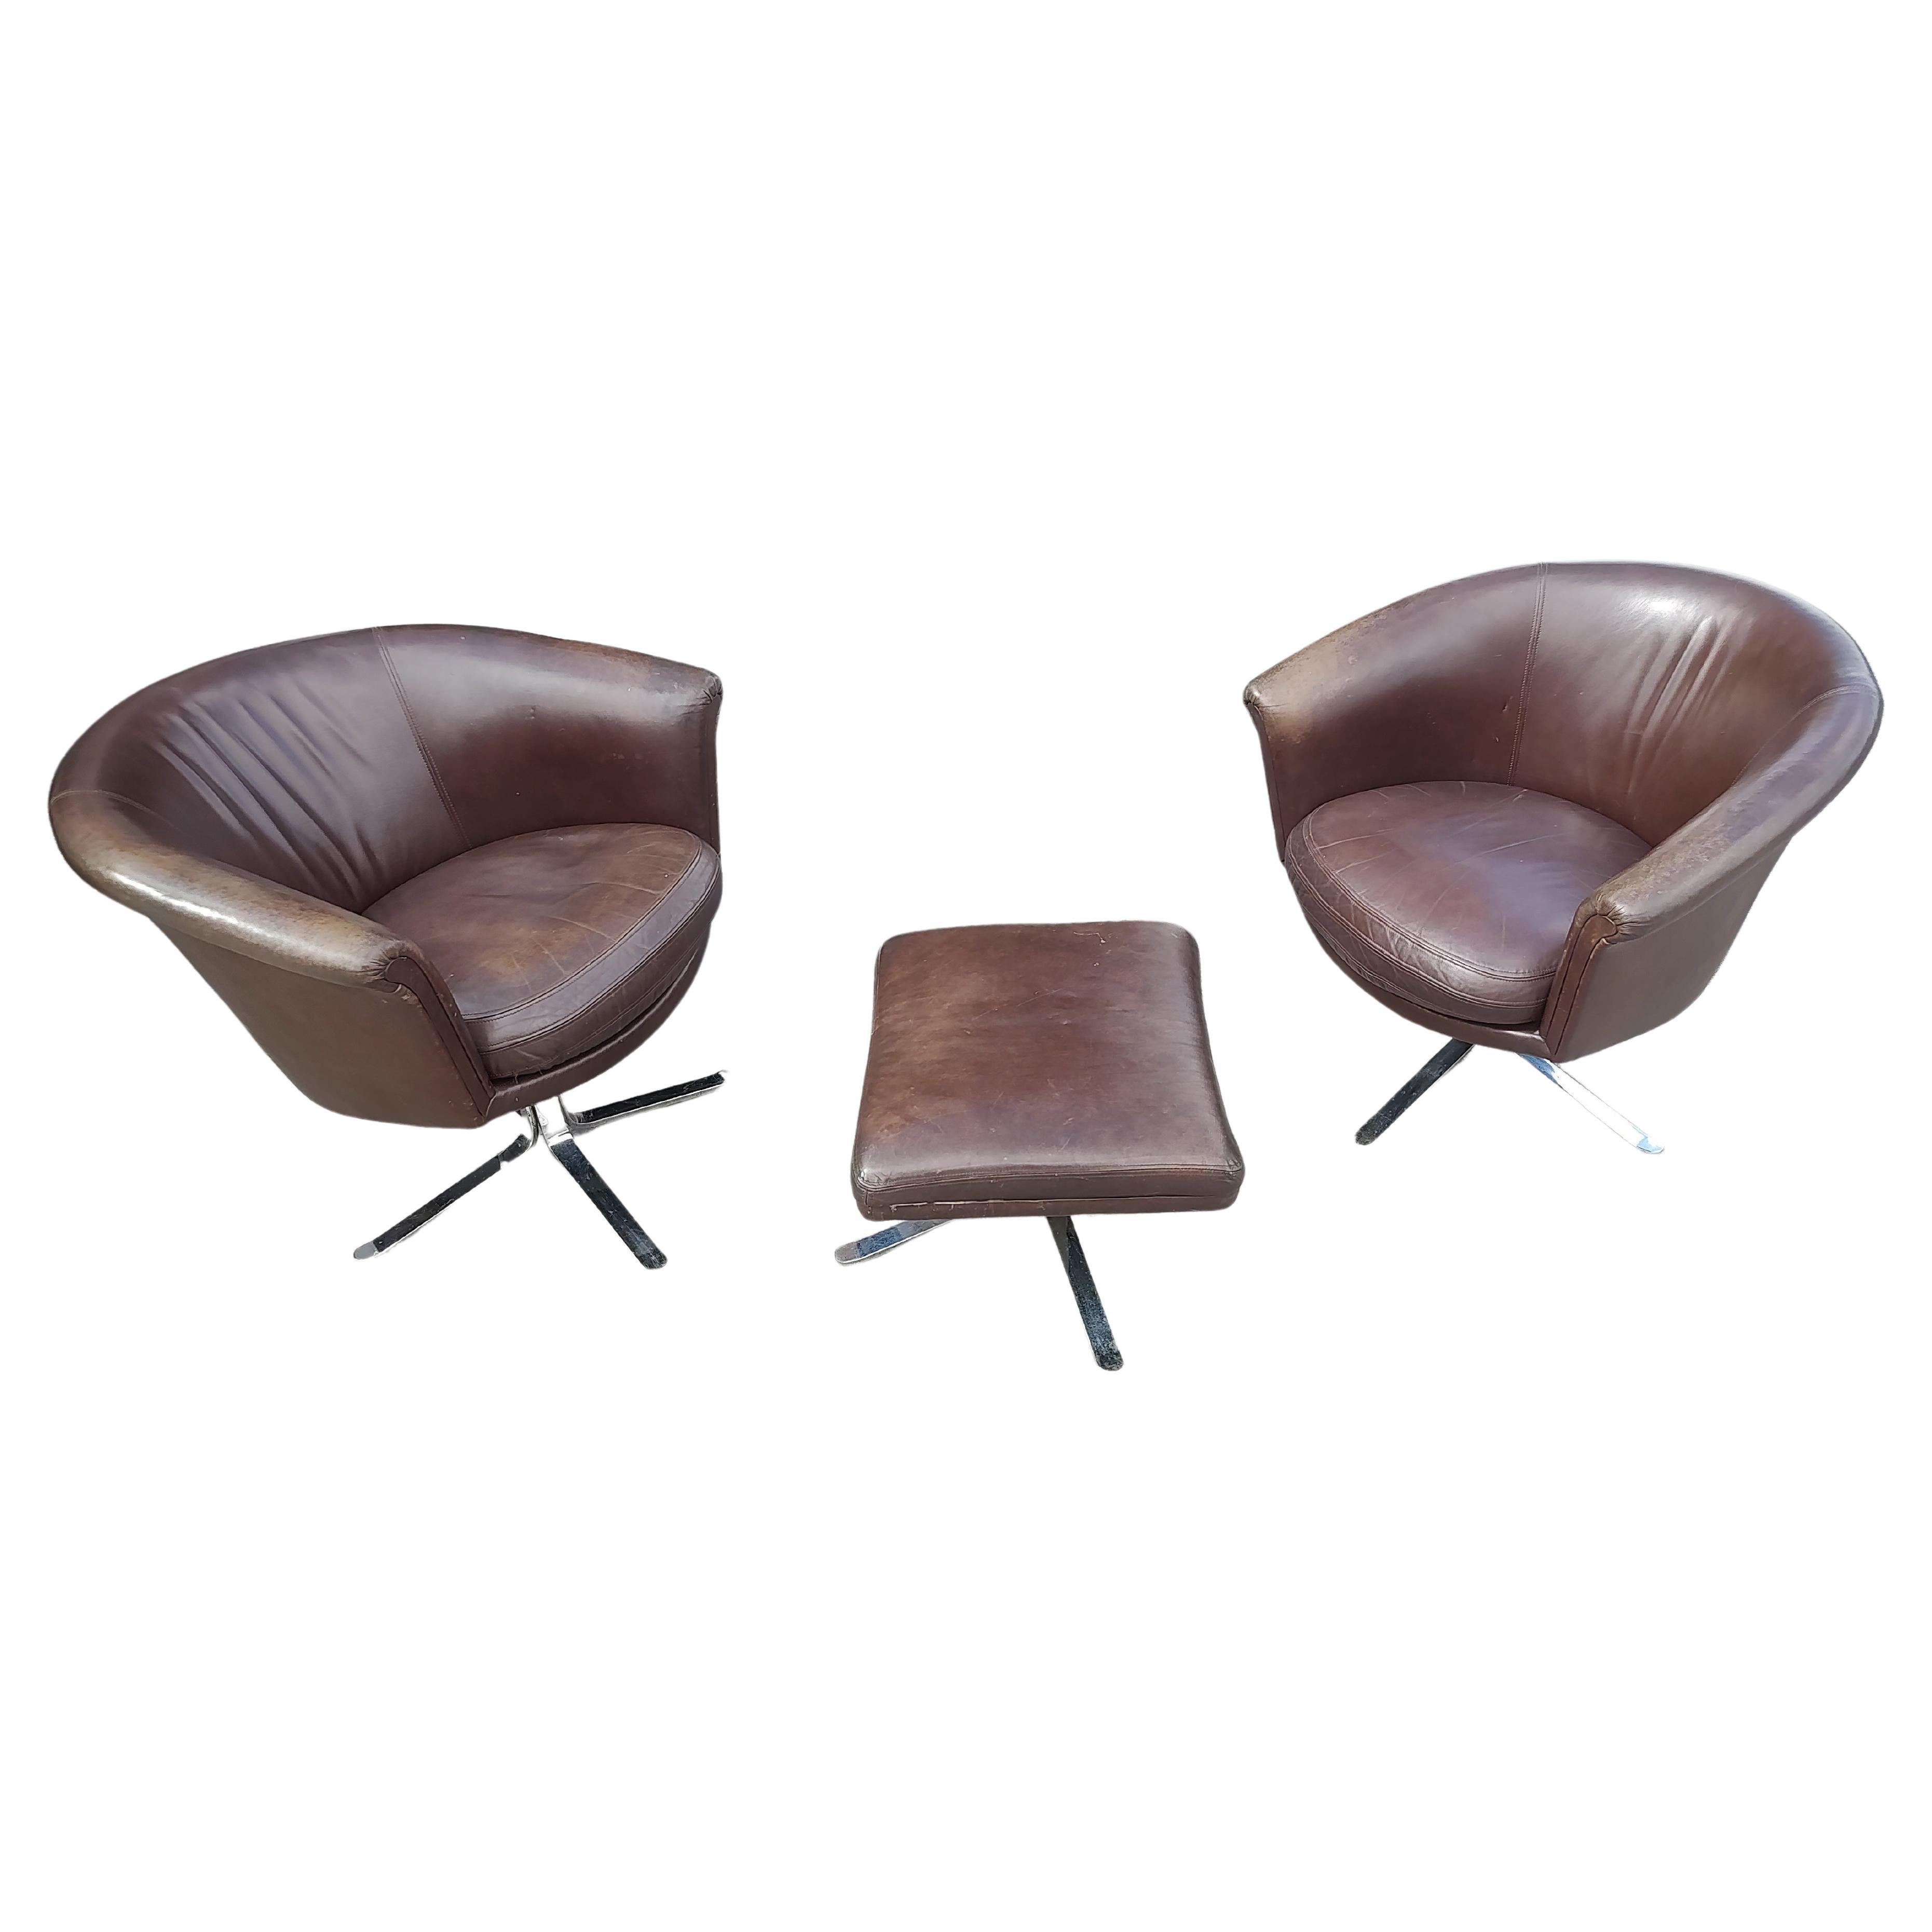 Fantastique paire de chaises longues pivotantes en cuir avec un ottoman. Cadre robuste avec un style et un soutien remarquables. Très confortable, une chaise est un peu plus haute que l'autre, de 1,5 pouces. Chaises Nicos By avec l'ottoman en